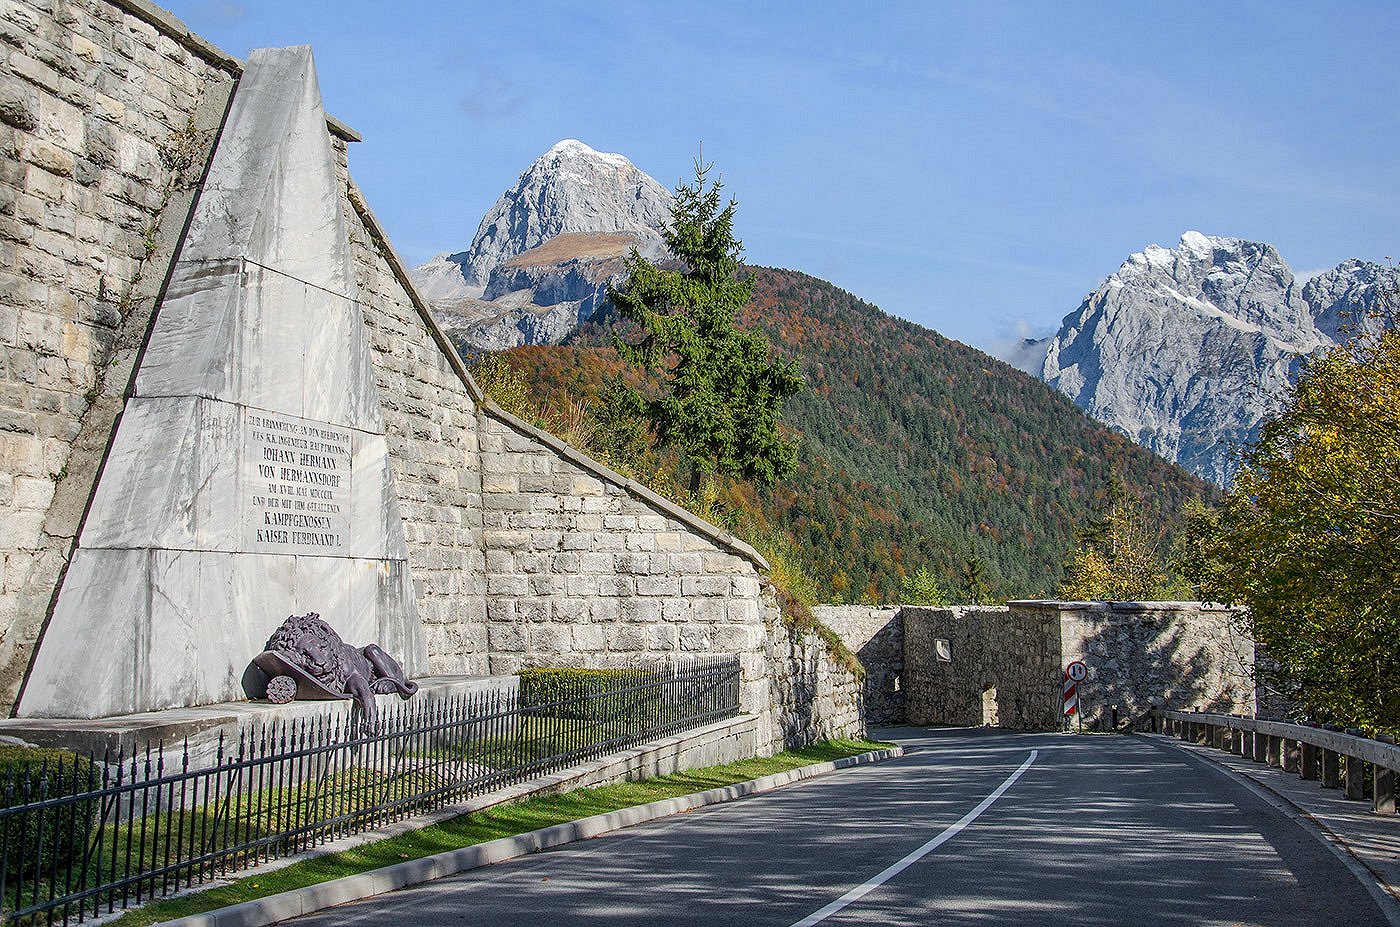 Spomenik s kipom ranjenega leva ob cesti proti Bovcu, v ozadju gora Mangart